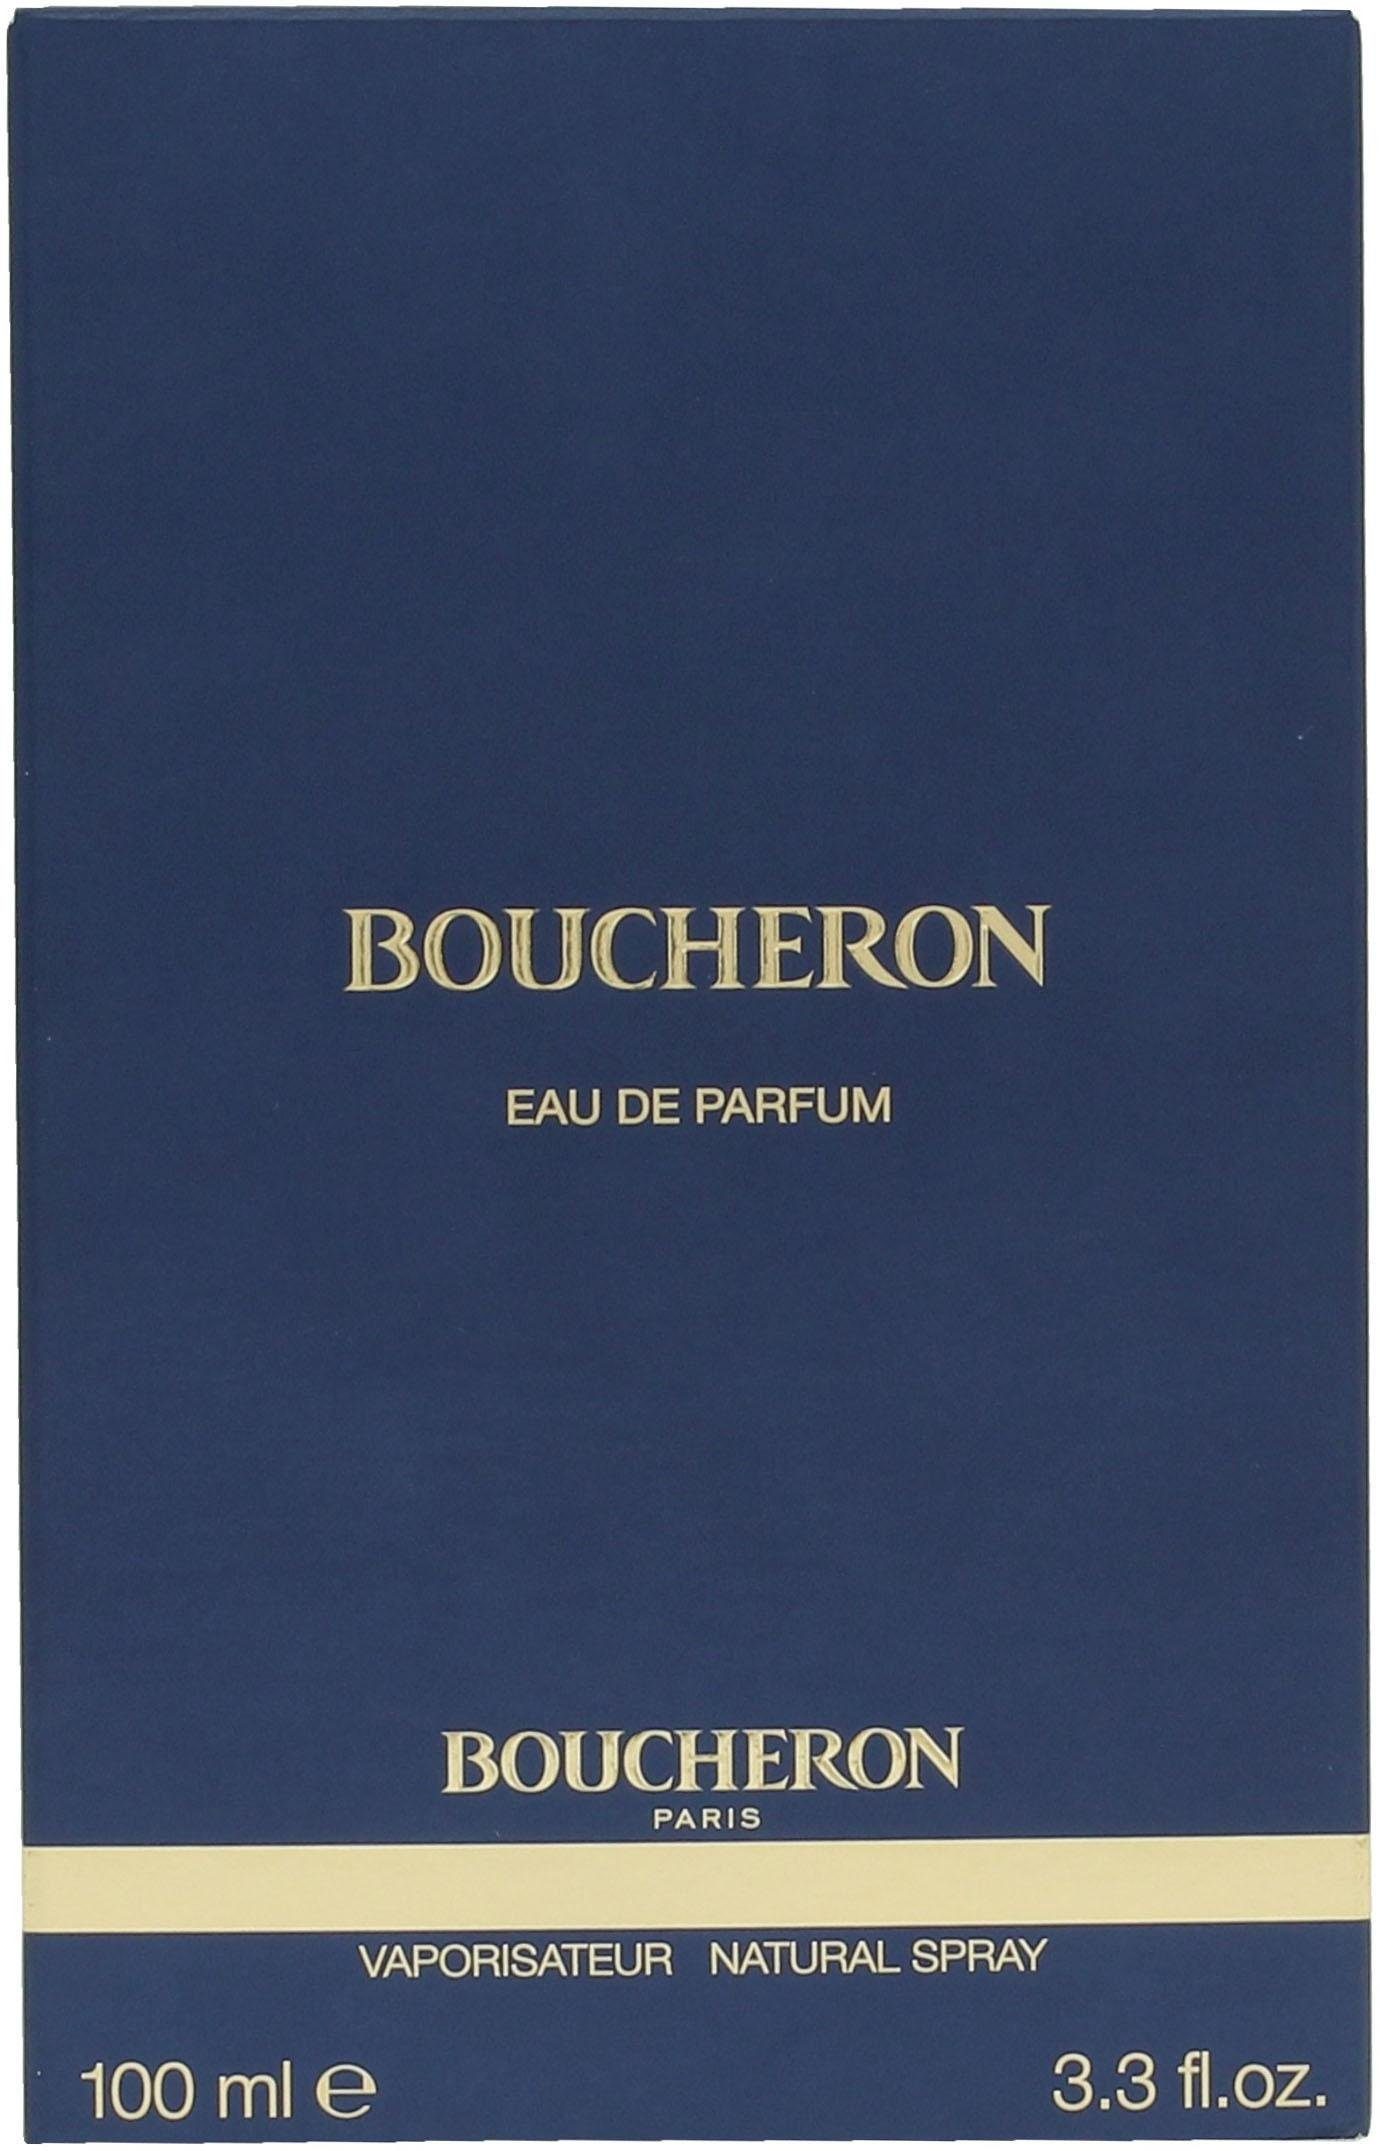 BOUCHERON Eau de Parfum femme Boucheron pour